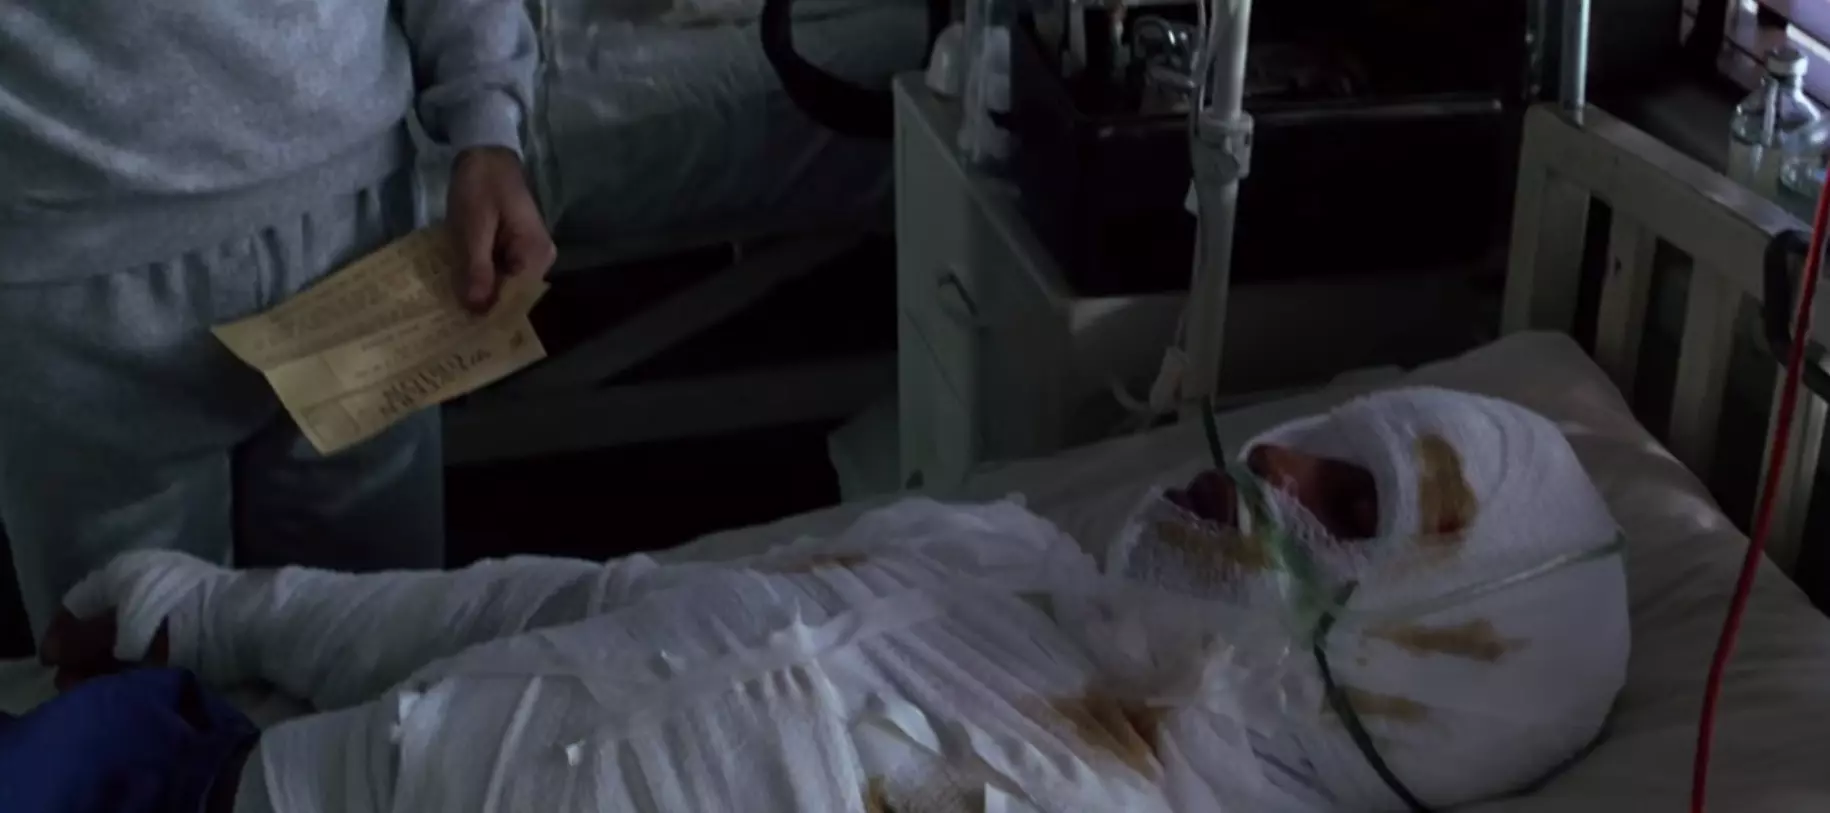 Скорее всего лейтенант Дэн в госпитале на самом деле выглядел так (кадр из к/ф "Форрест Гамп").